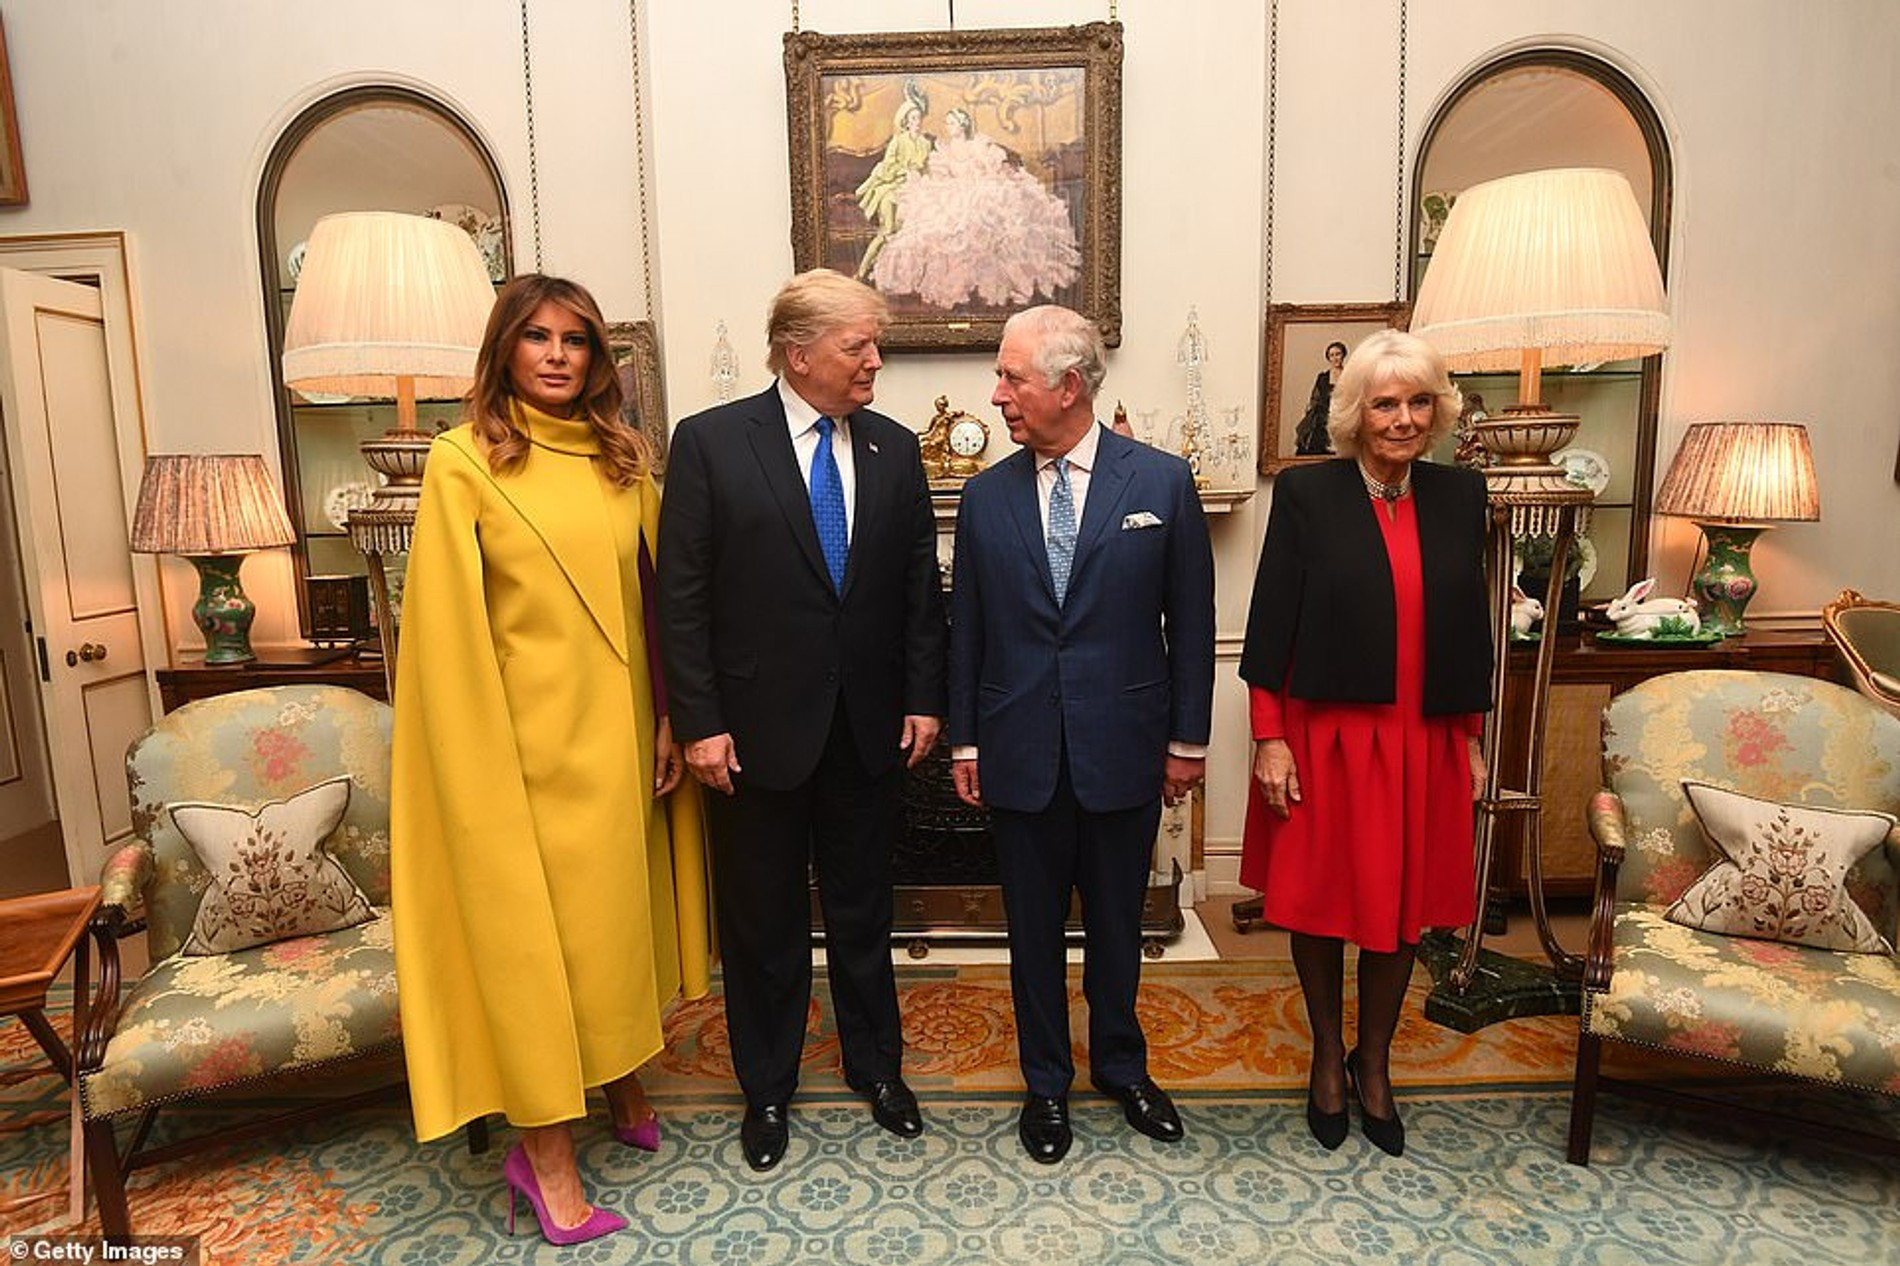 Дональд Трамп и принц Чарльз с женами на официальной встрече
Фото: Getty